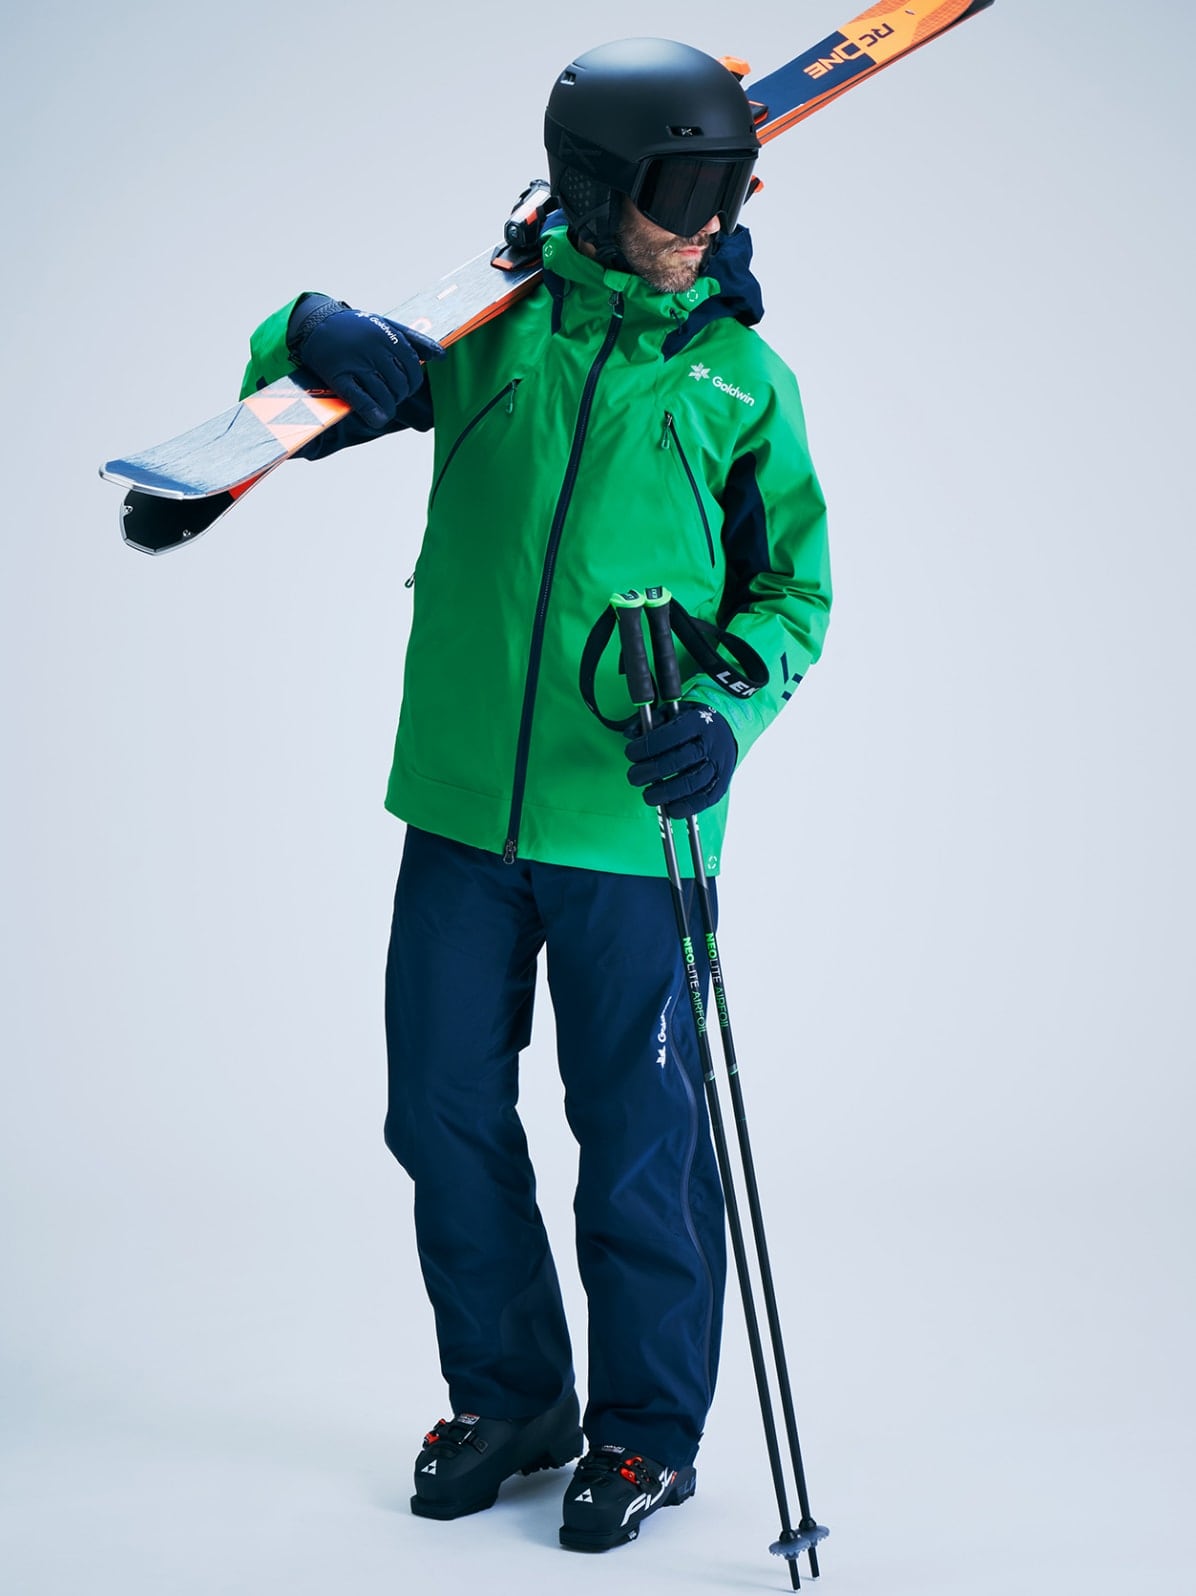 メンズ スキーコレクション 2020-2021 | Goldwin - ゴールドウインブランドサイト | Goldwin - ゴールドウイン